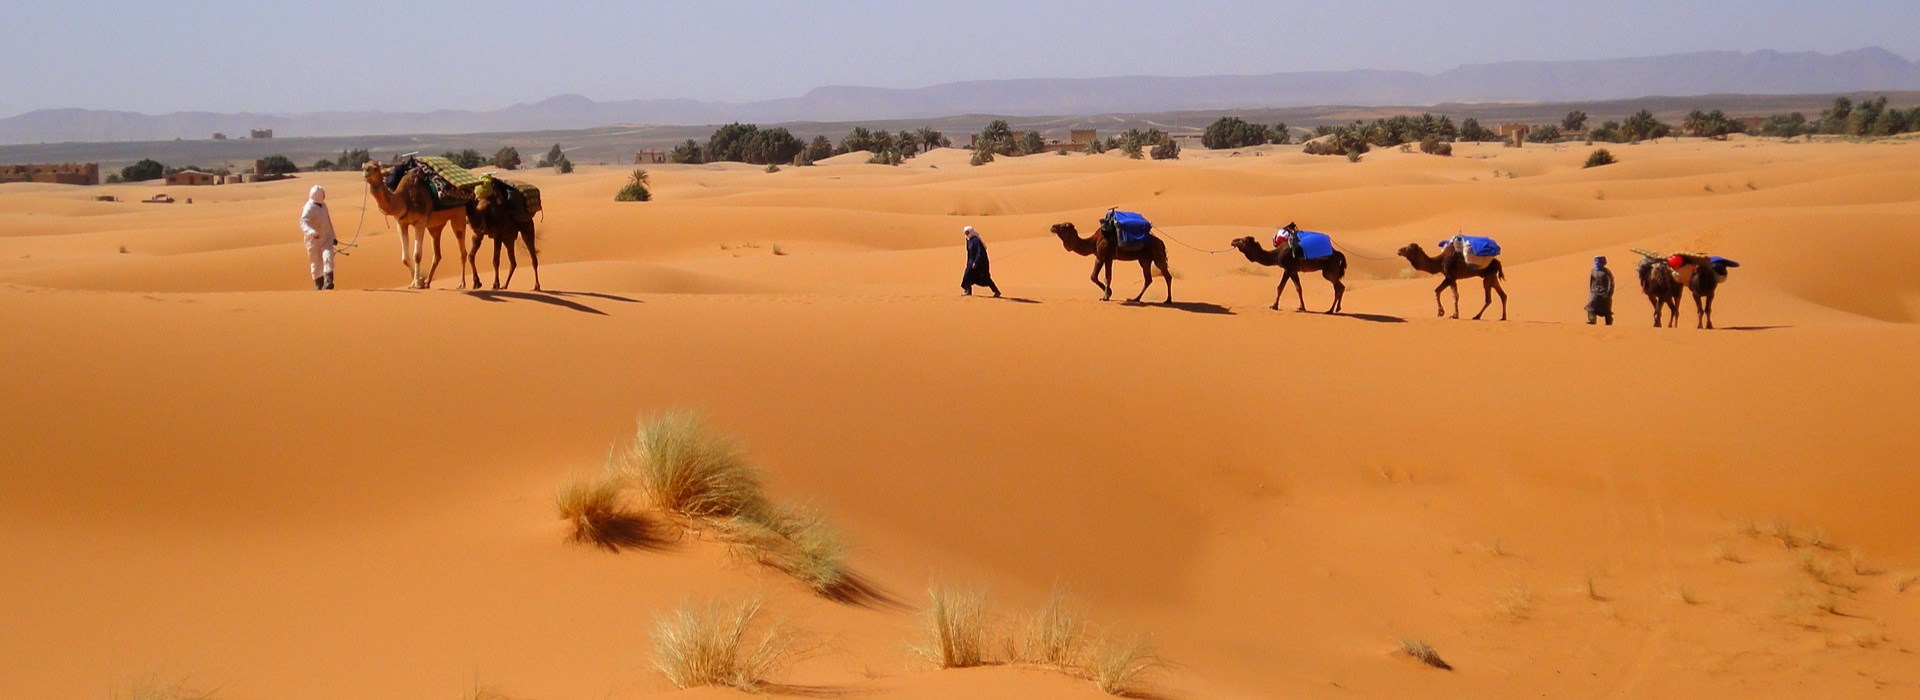 Visiter Les dunes de Bougayouarne - Maroc